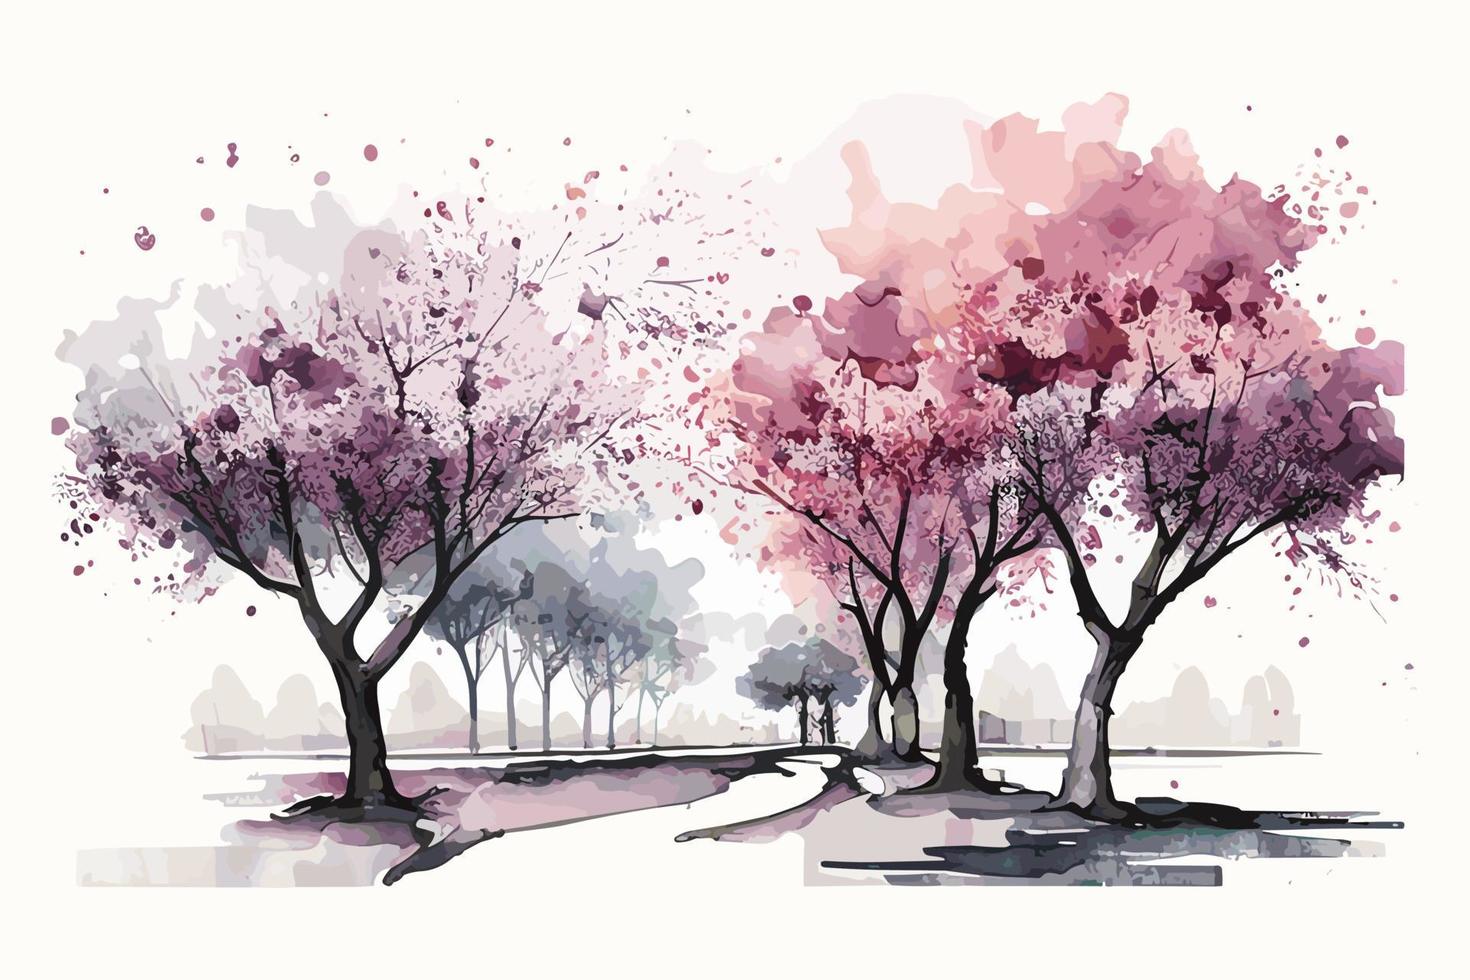 acuarela Cereza florecer arboleda ilustración diseño vector